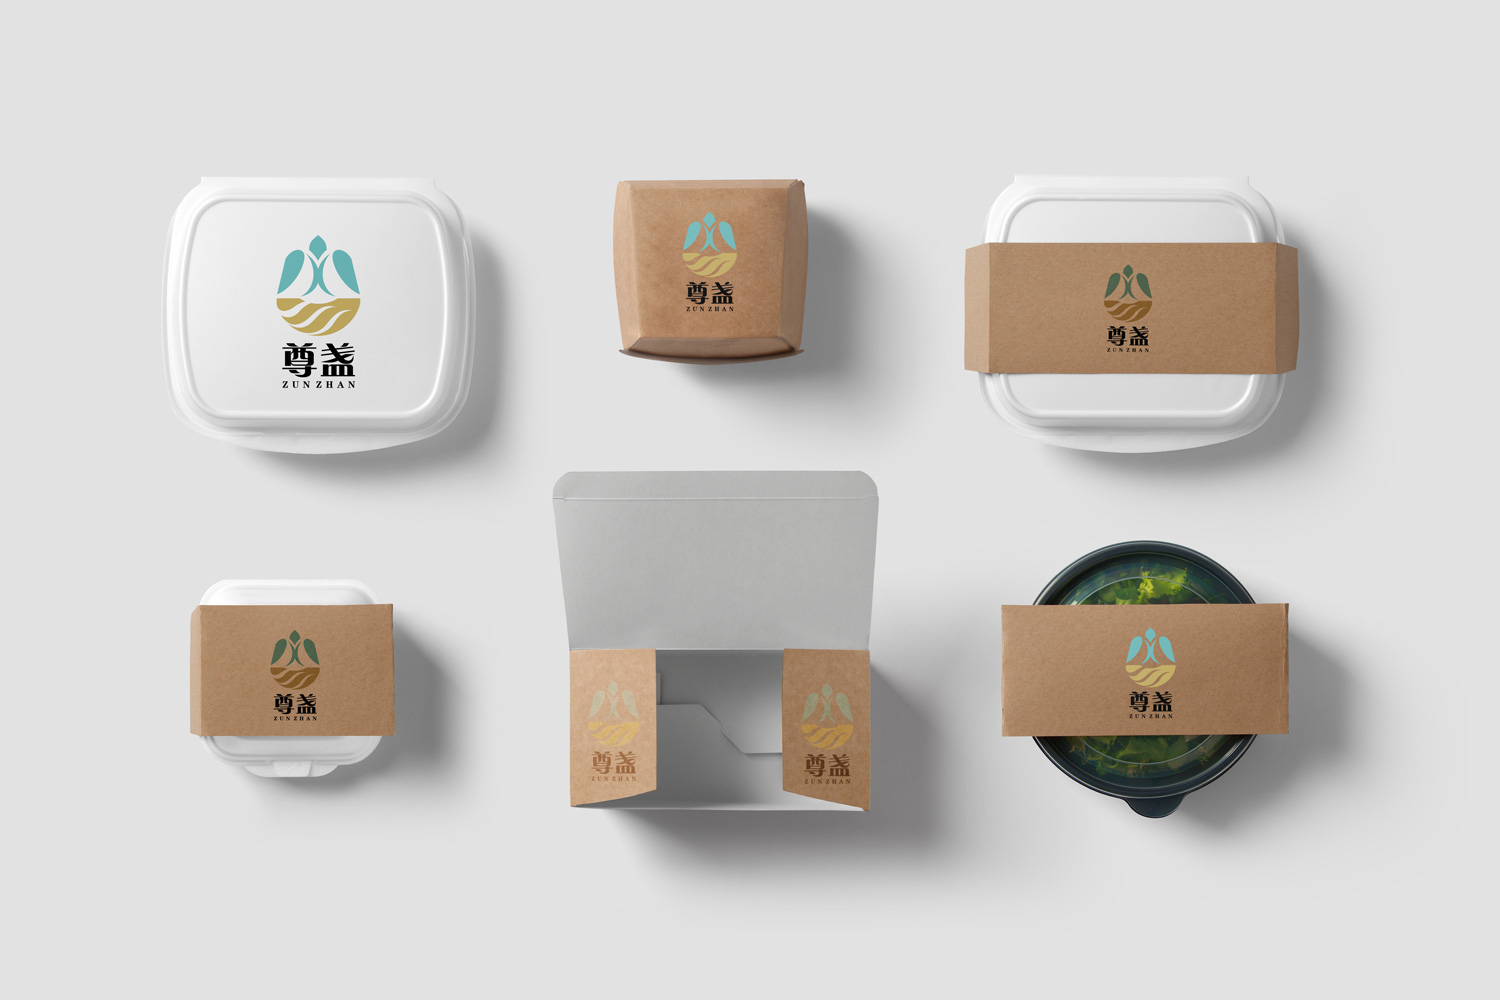 广州餐饮品牌设计公司是怎么做好餐饮定位的 